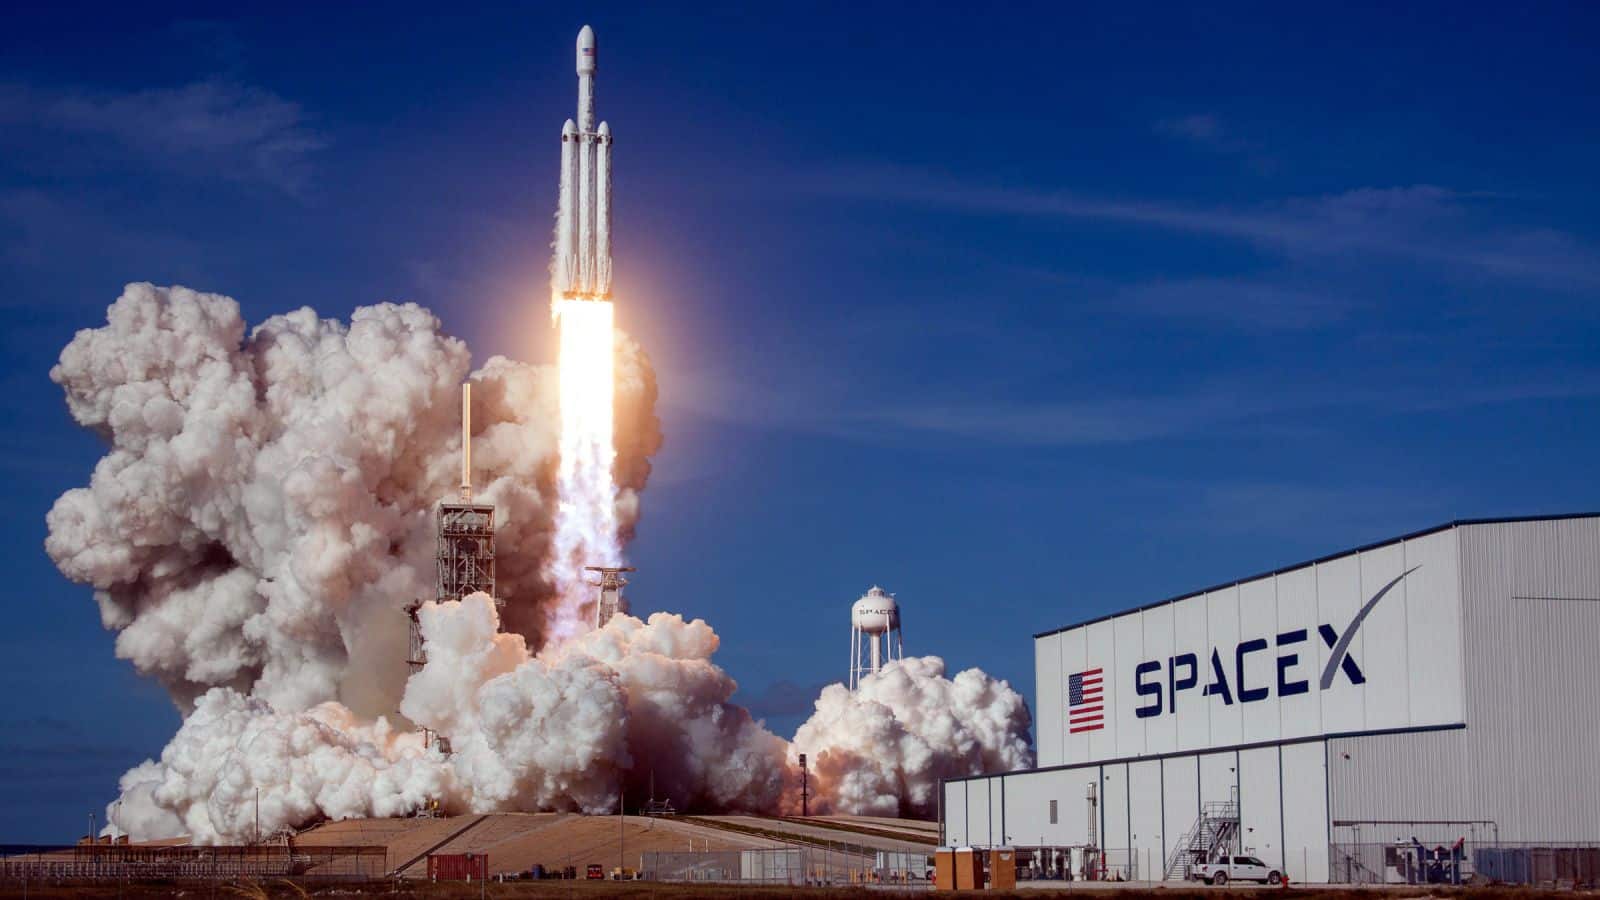 سبيس إكس تفوز بعقد عسكري لإطلاق قمر صناعي على متن صاروخ فالكون هيفي